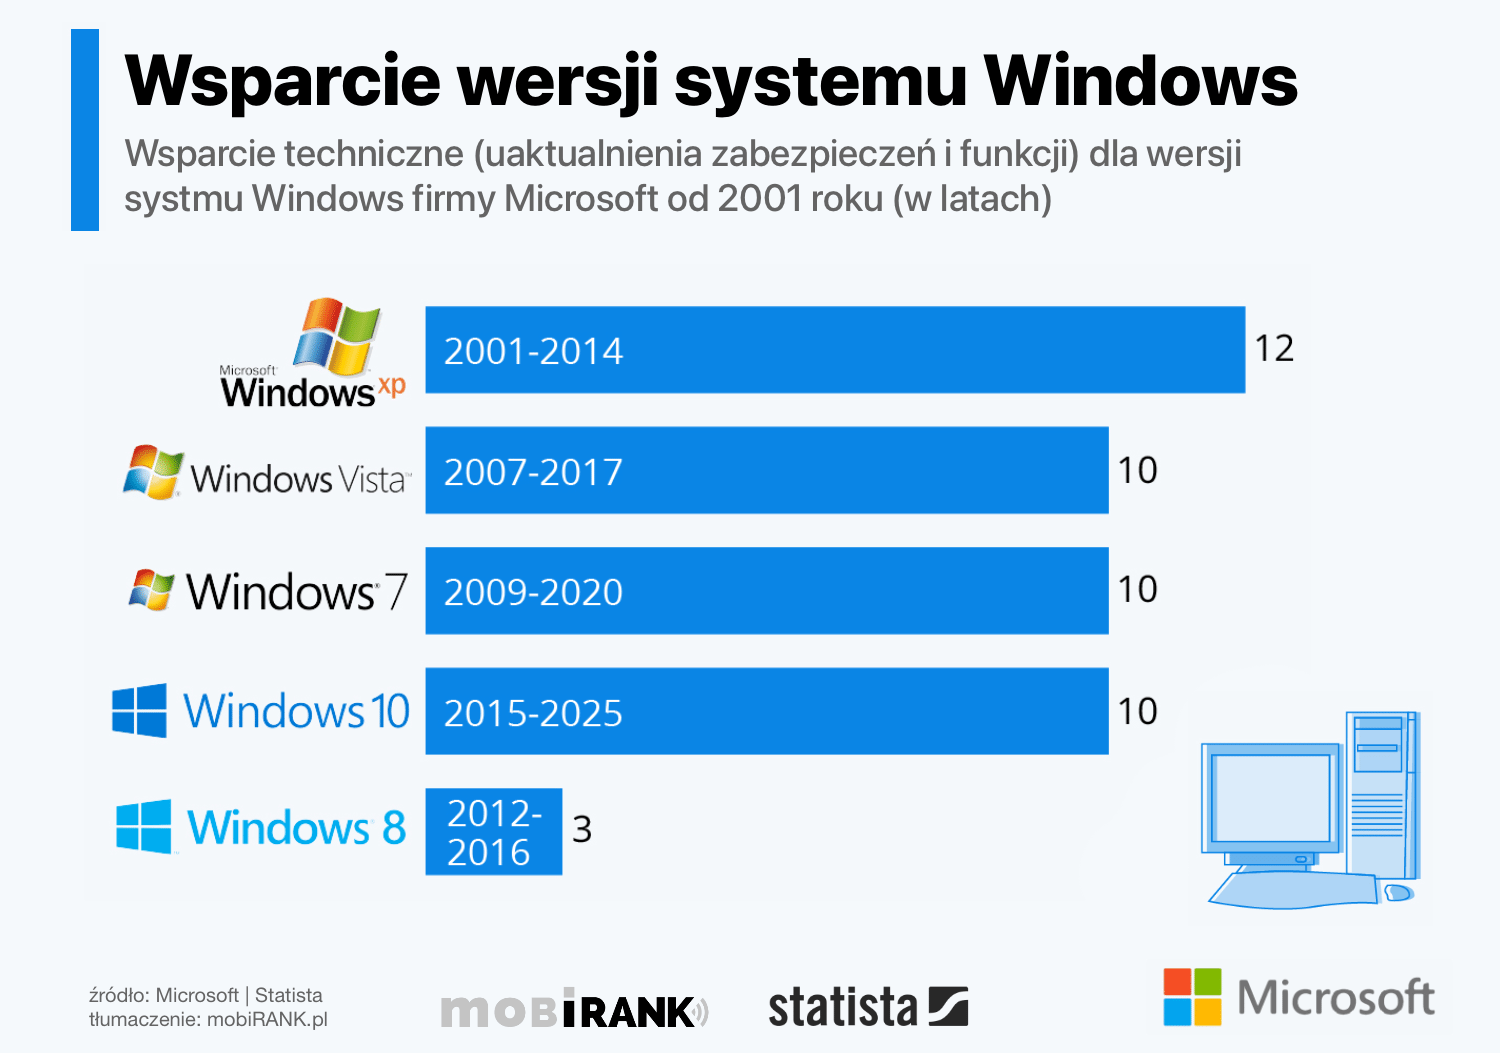 Wsparcie techniczne Microsoftu dla wersji systemu Windows (od 2001 roku)